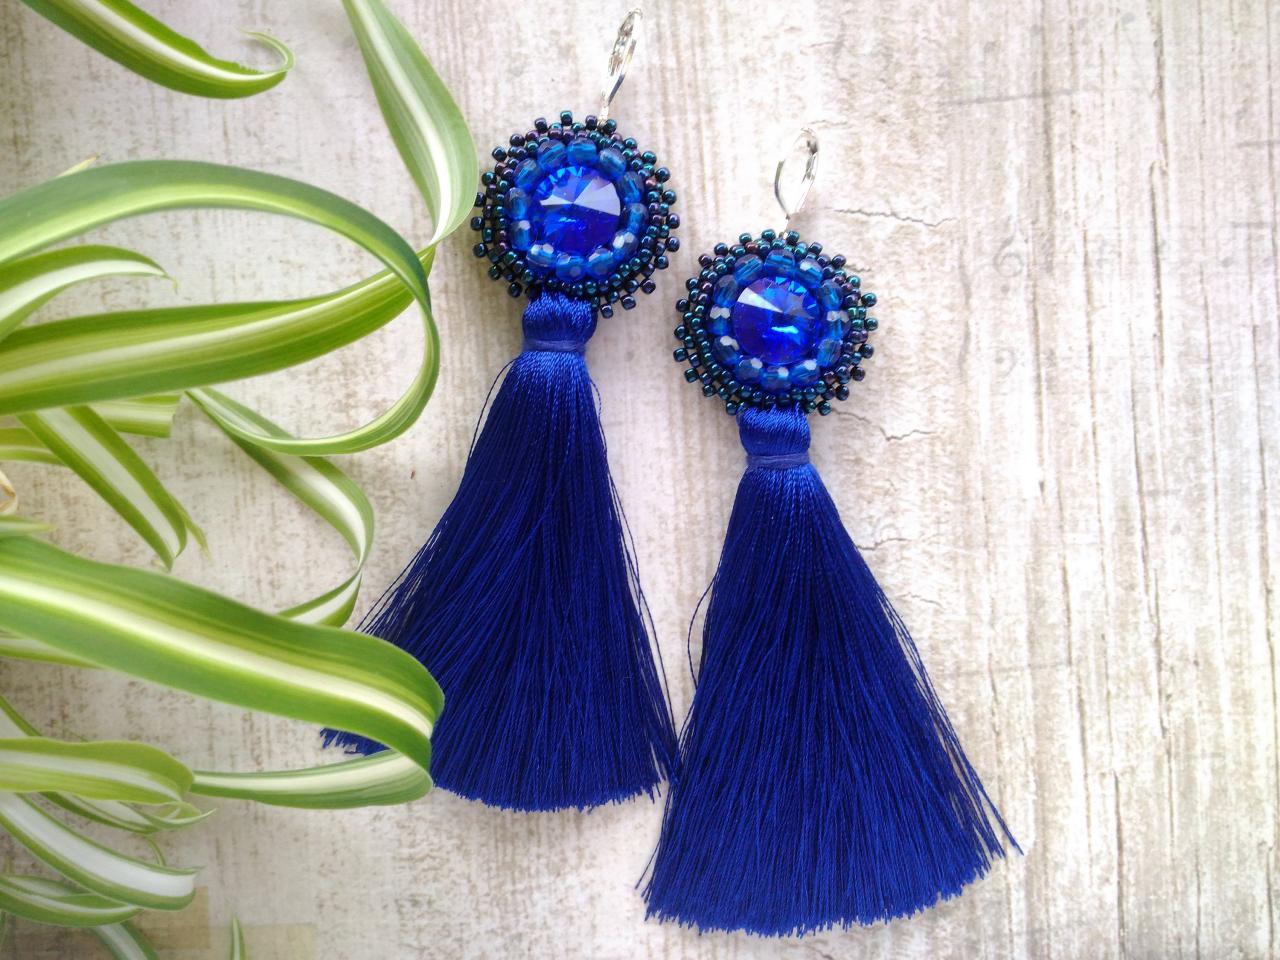 Long Tassel Earrings With Swarovski Rivoli Crystals, Royal Blue Bead Embroidery Earrings, Bohemian Statement Earrings, Elegant Blue Earrings